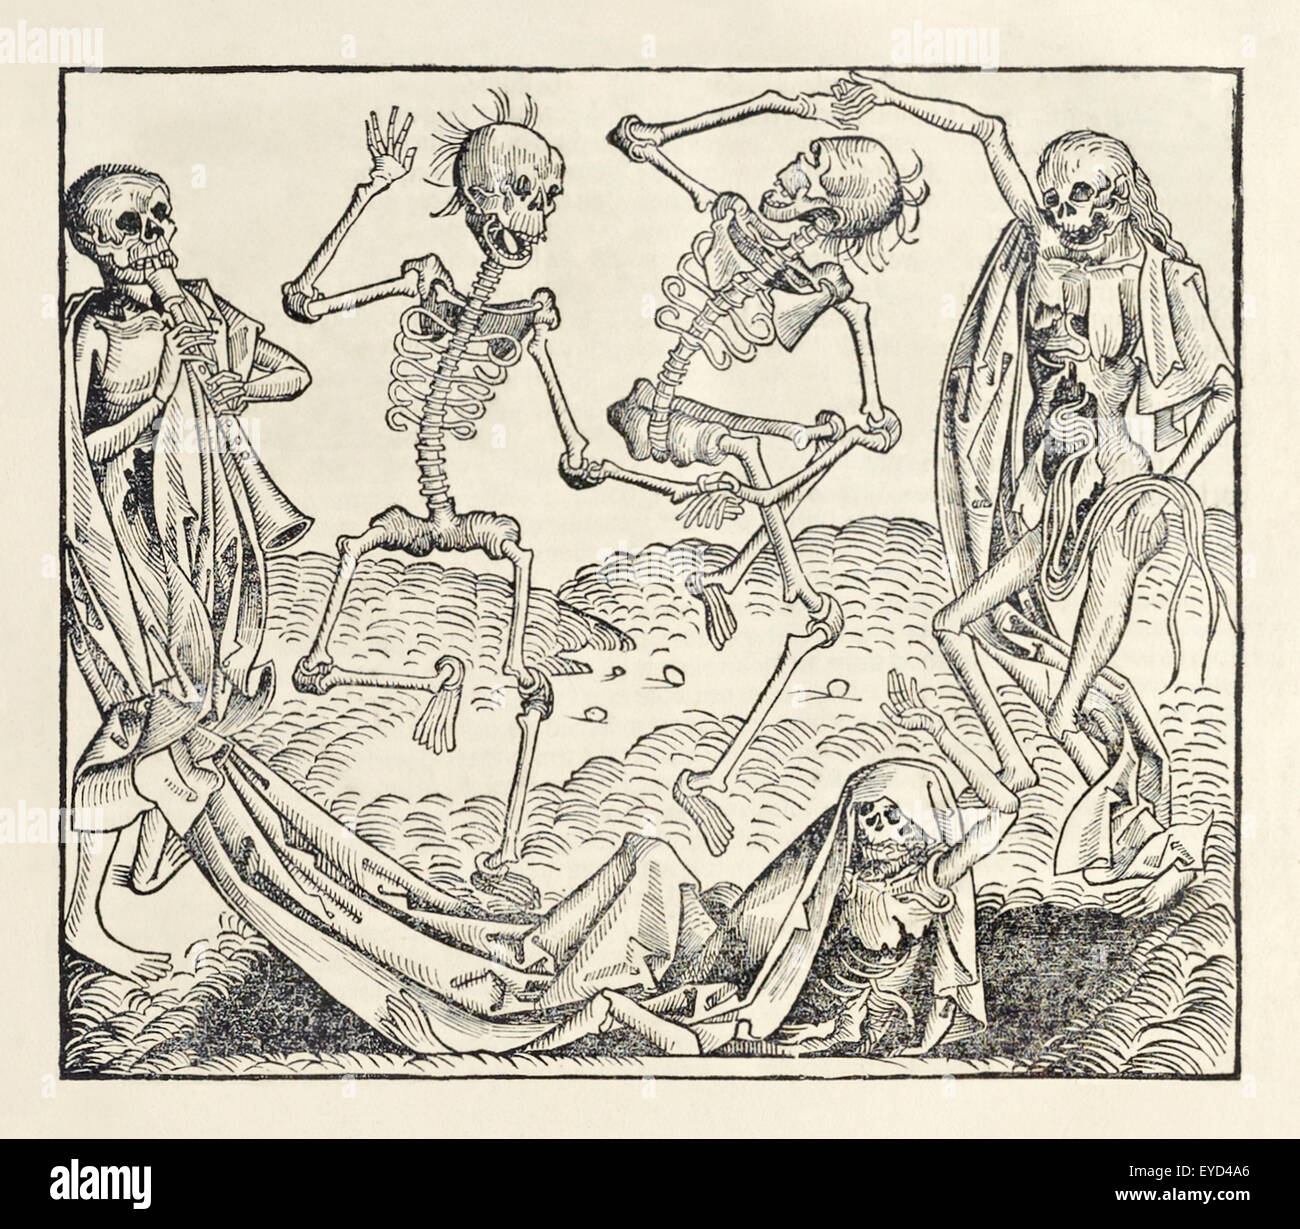 'Danse de la mort' (alias 'danse macabre') d'après 'Liber Chronicarum' de Hartmann Schedel (1440-1514) publié en 1493, gravure sur bois de Michael Wolgemut (1434-1519). Photographie de 1493 première édition en latin publiée à Nuremberg, Allemagne. Crédit : Collection privée/AF Fotografie Banque D'Images